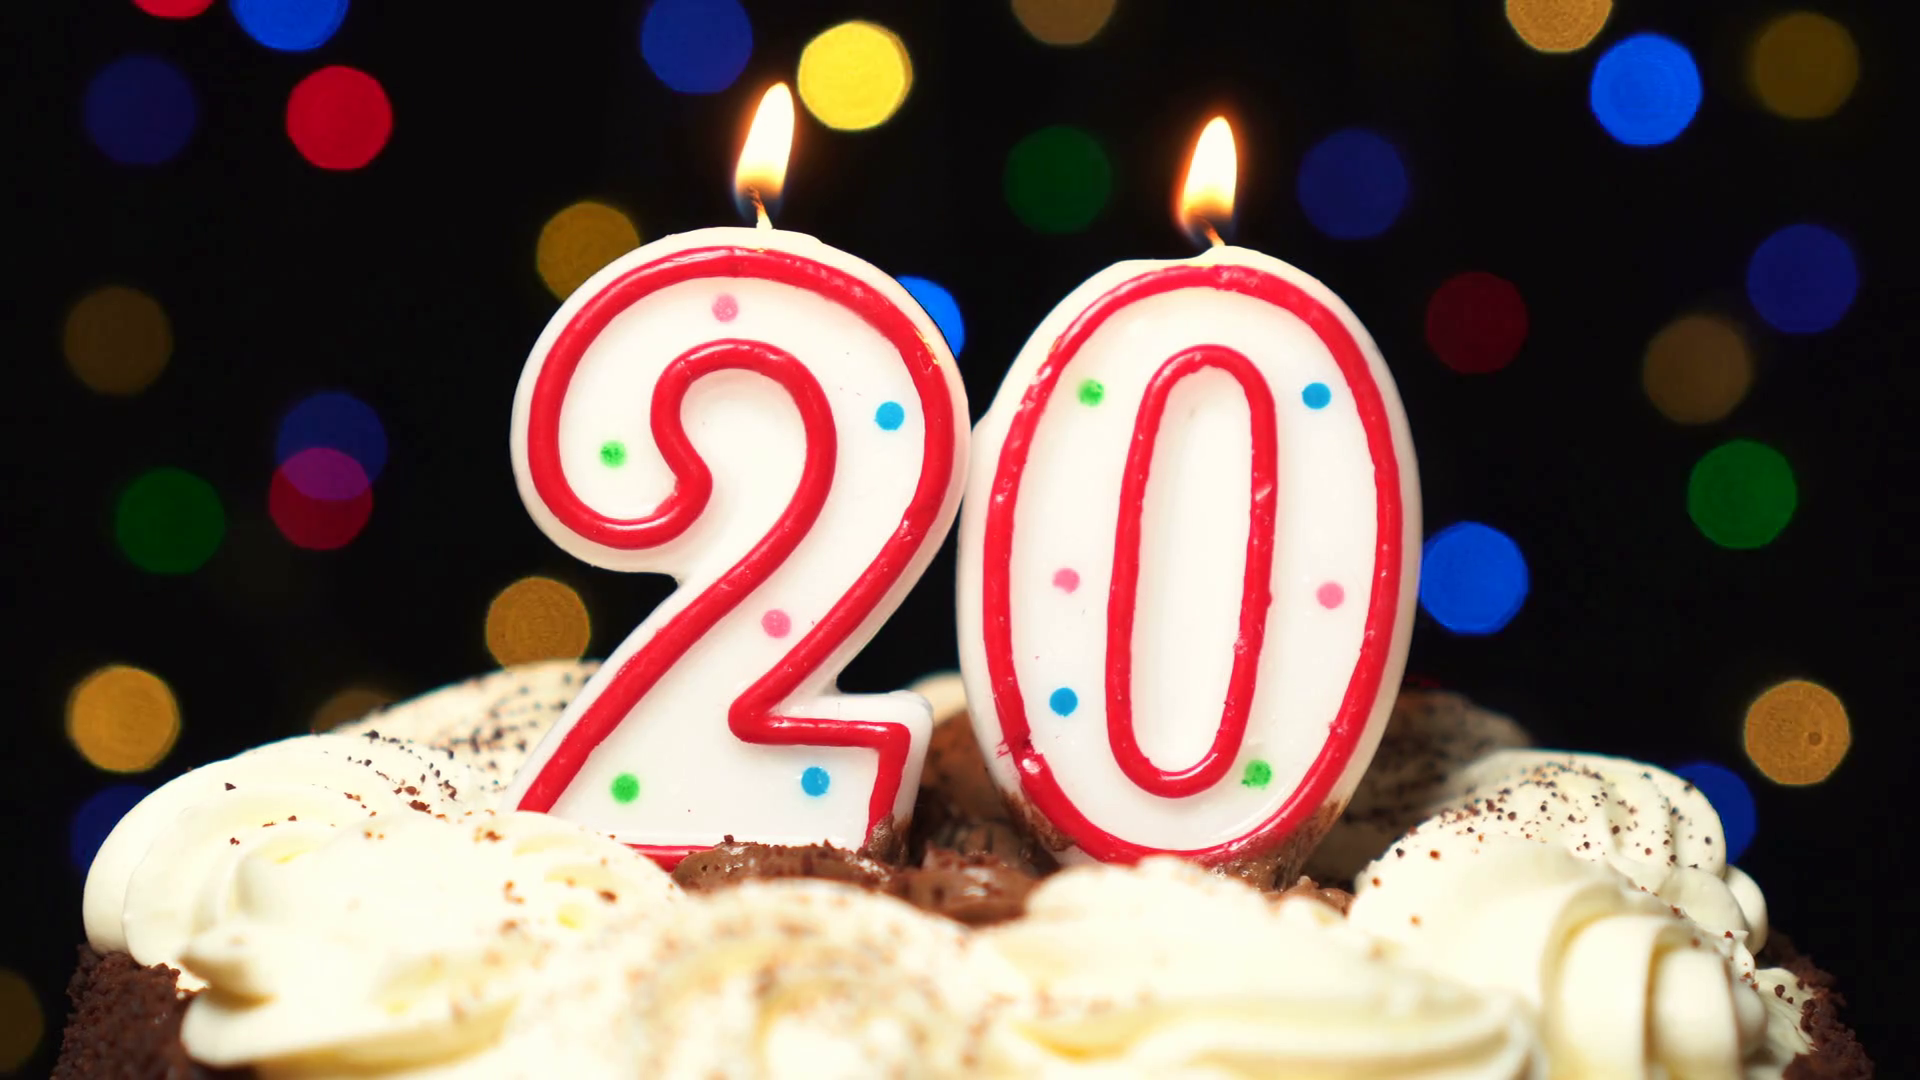 В честь 20 летия. Свечи 20 лет. С юбилеем 20 лет. Торт со свечкой 20. День рождения 20 лет свечи.